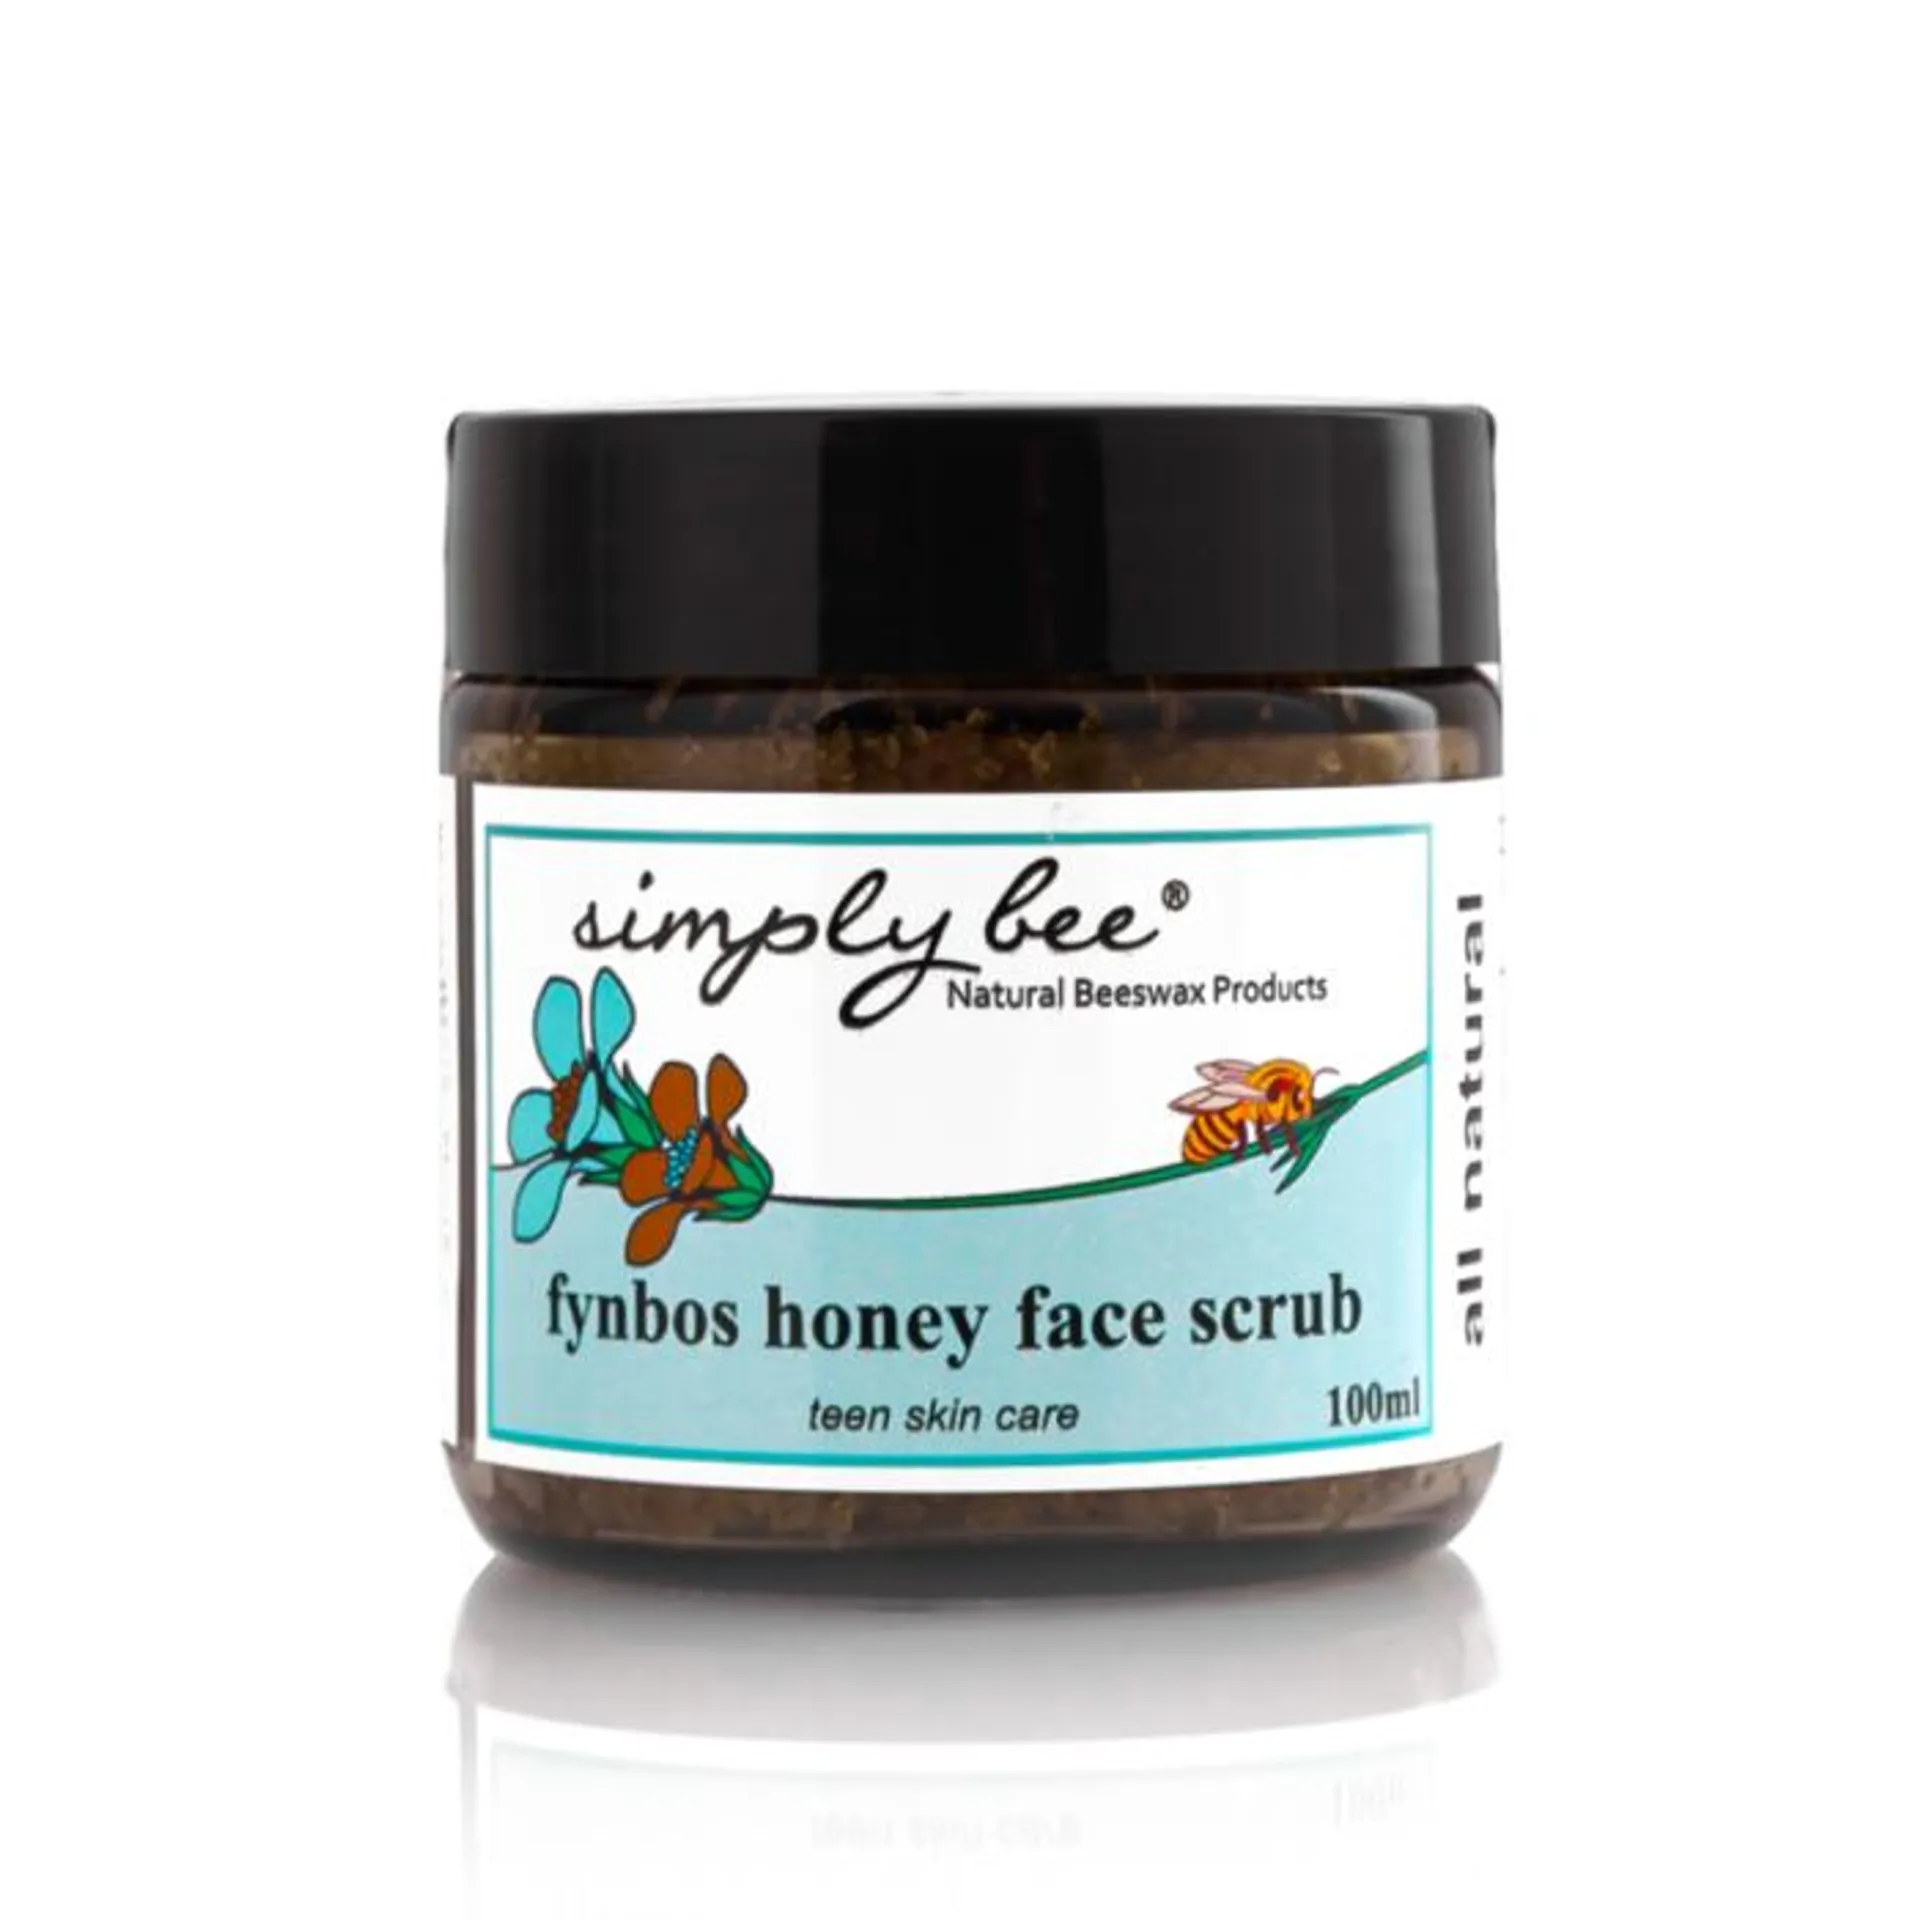 Simply Bee - Teen Skin Care Face Scrub 100ml